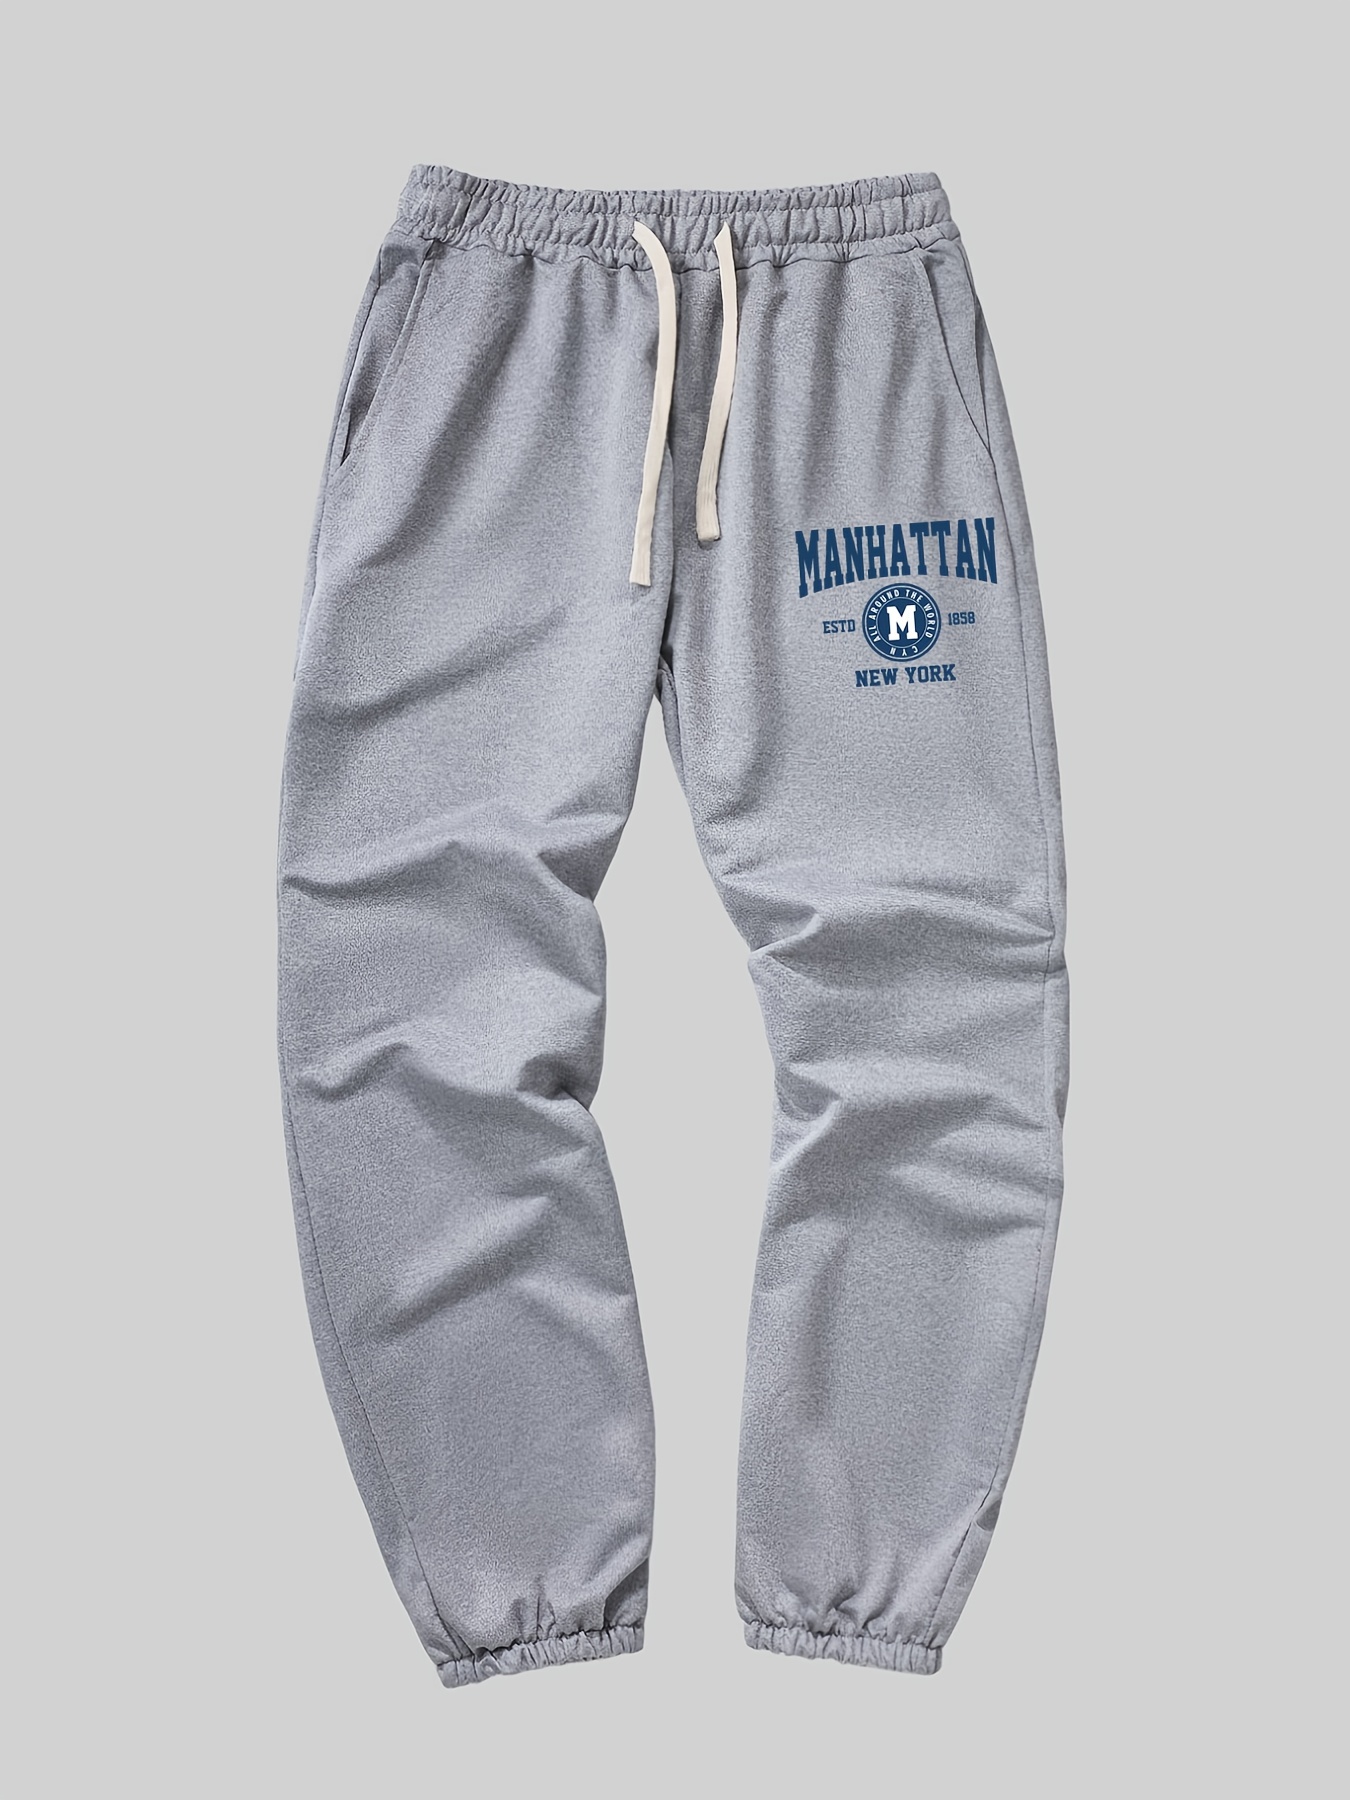 MANHATTAN CASUAL Pants Manhattan